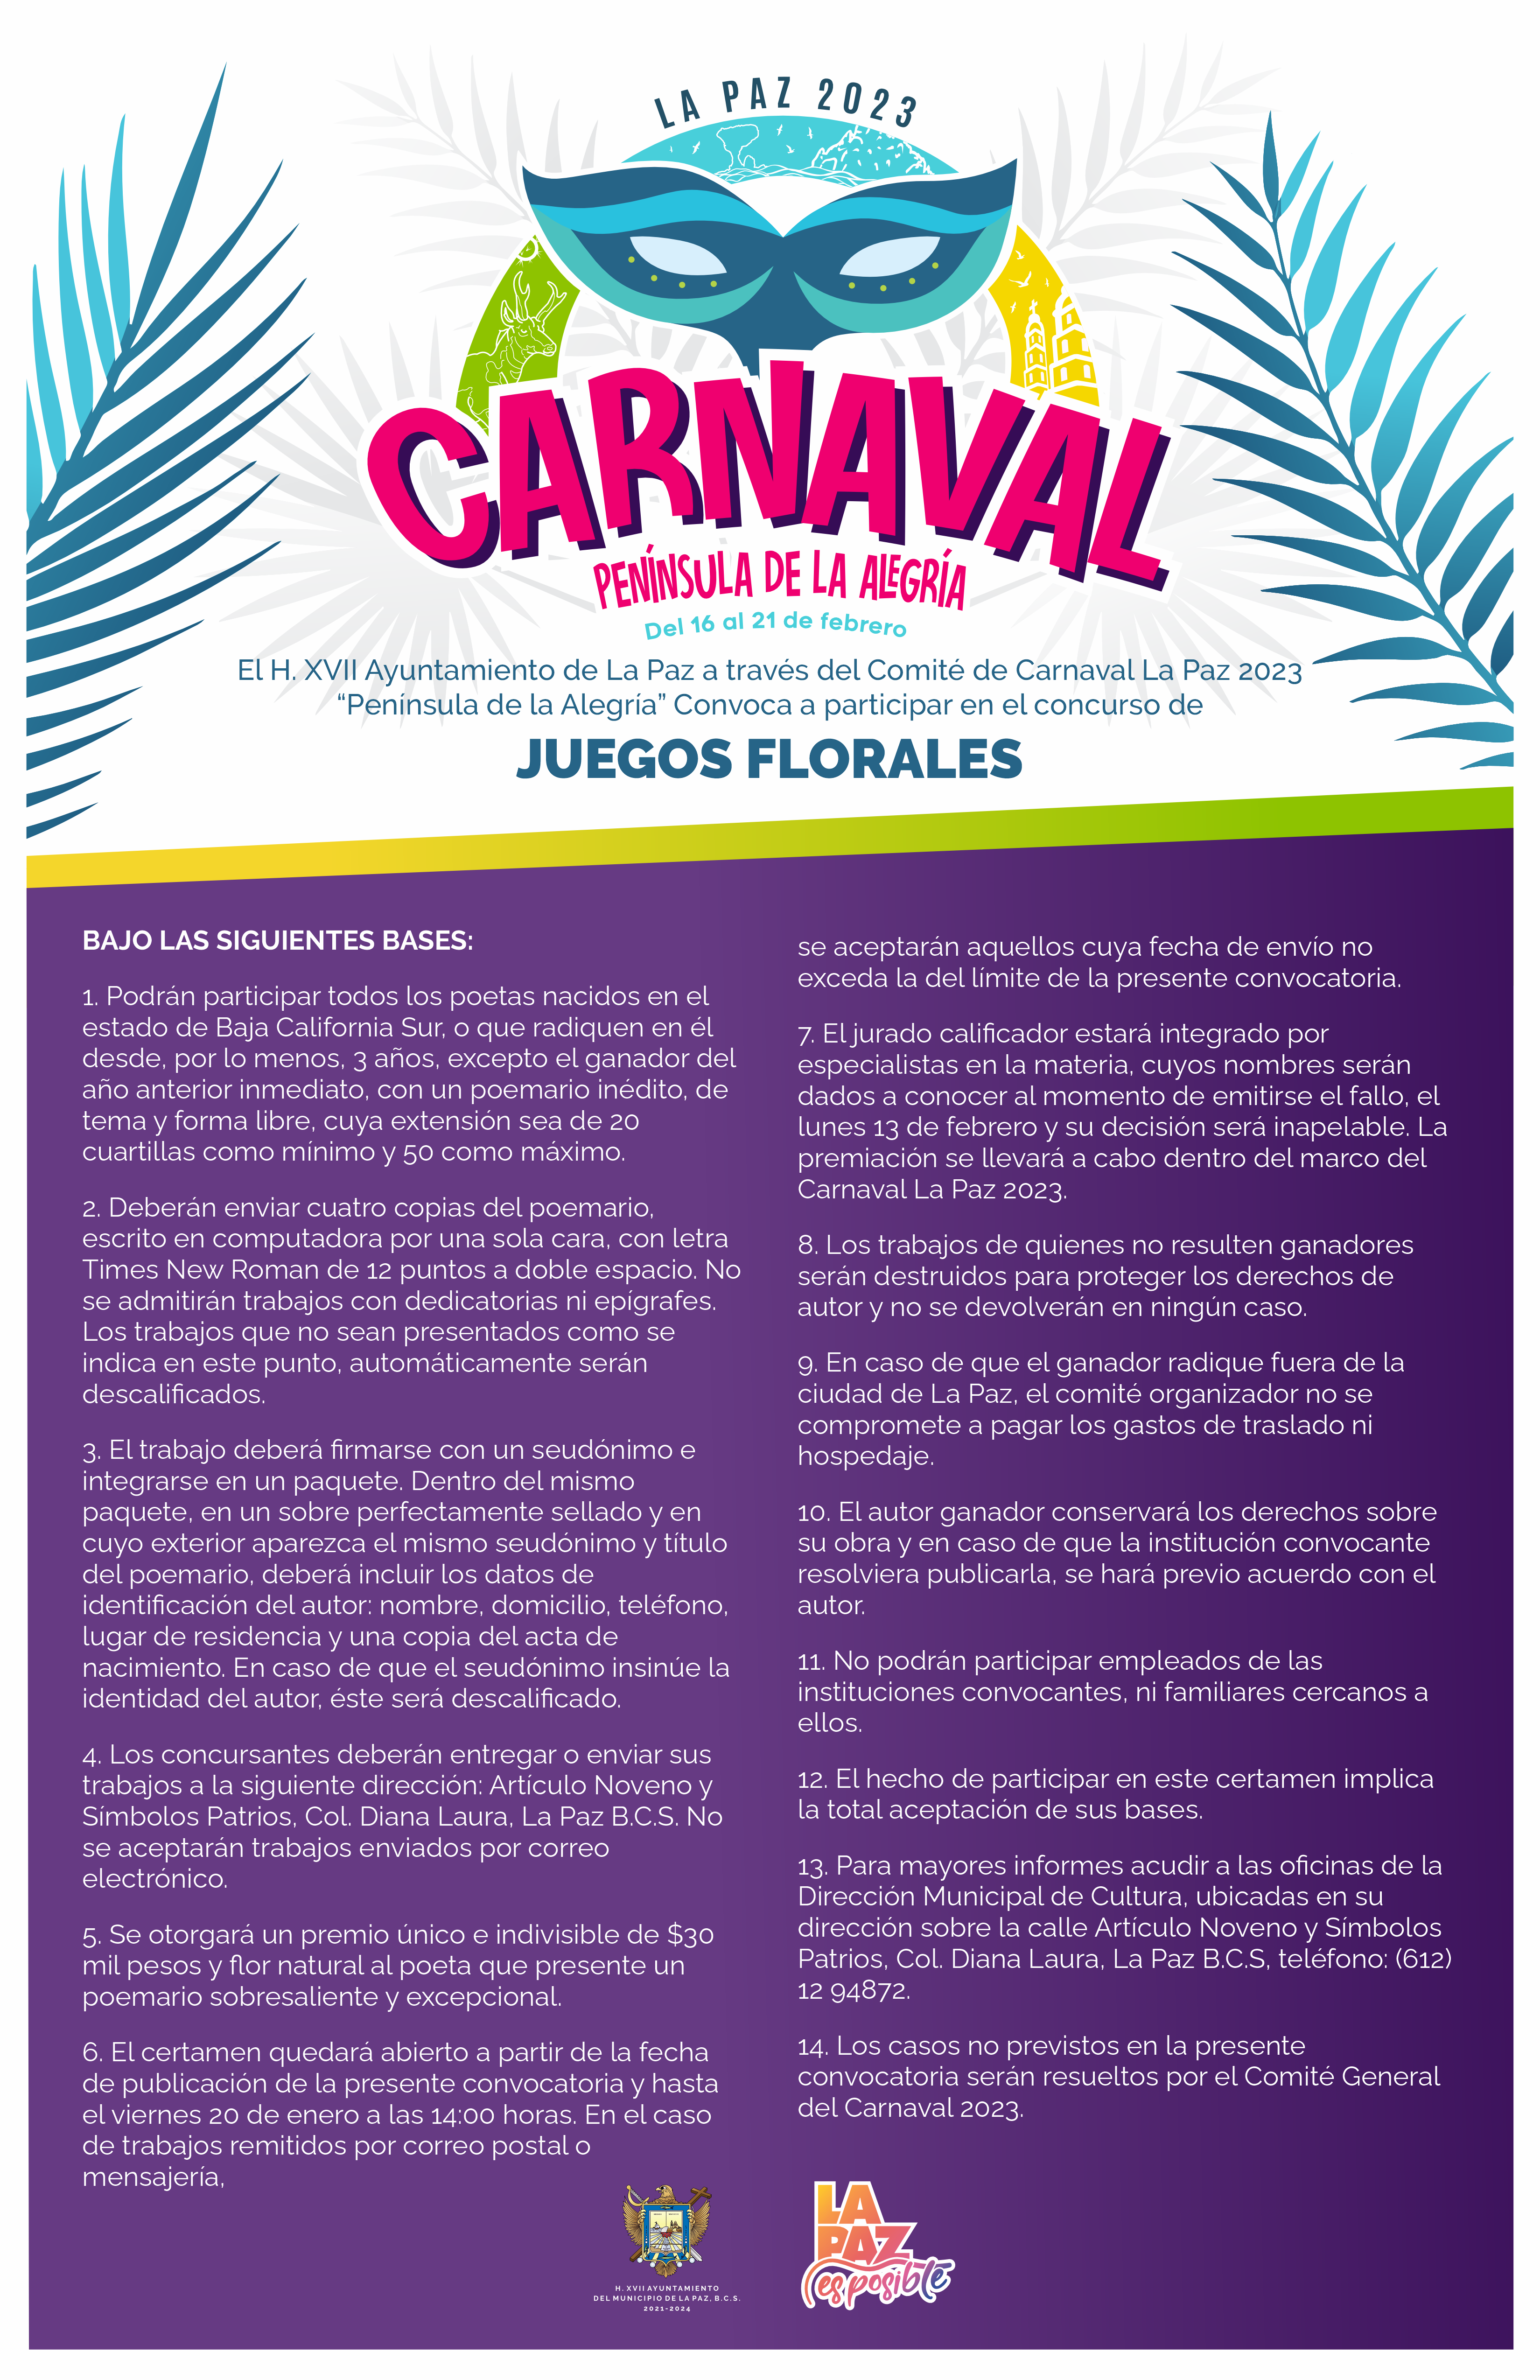 CONVOCAN A POETAS AL CONCURSO JUEGOS FLORALES DEL CARNAVAL LA PAZ 2023